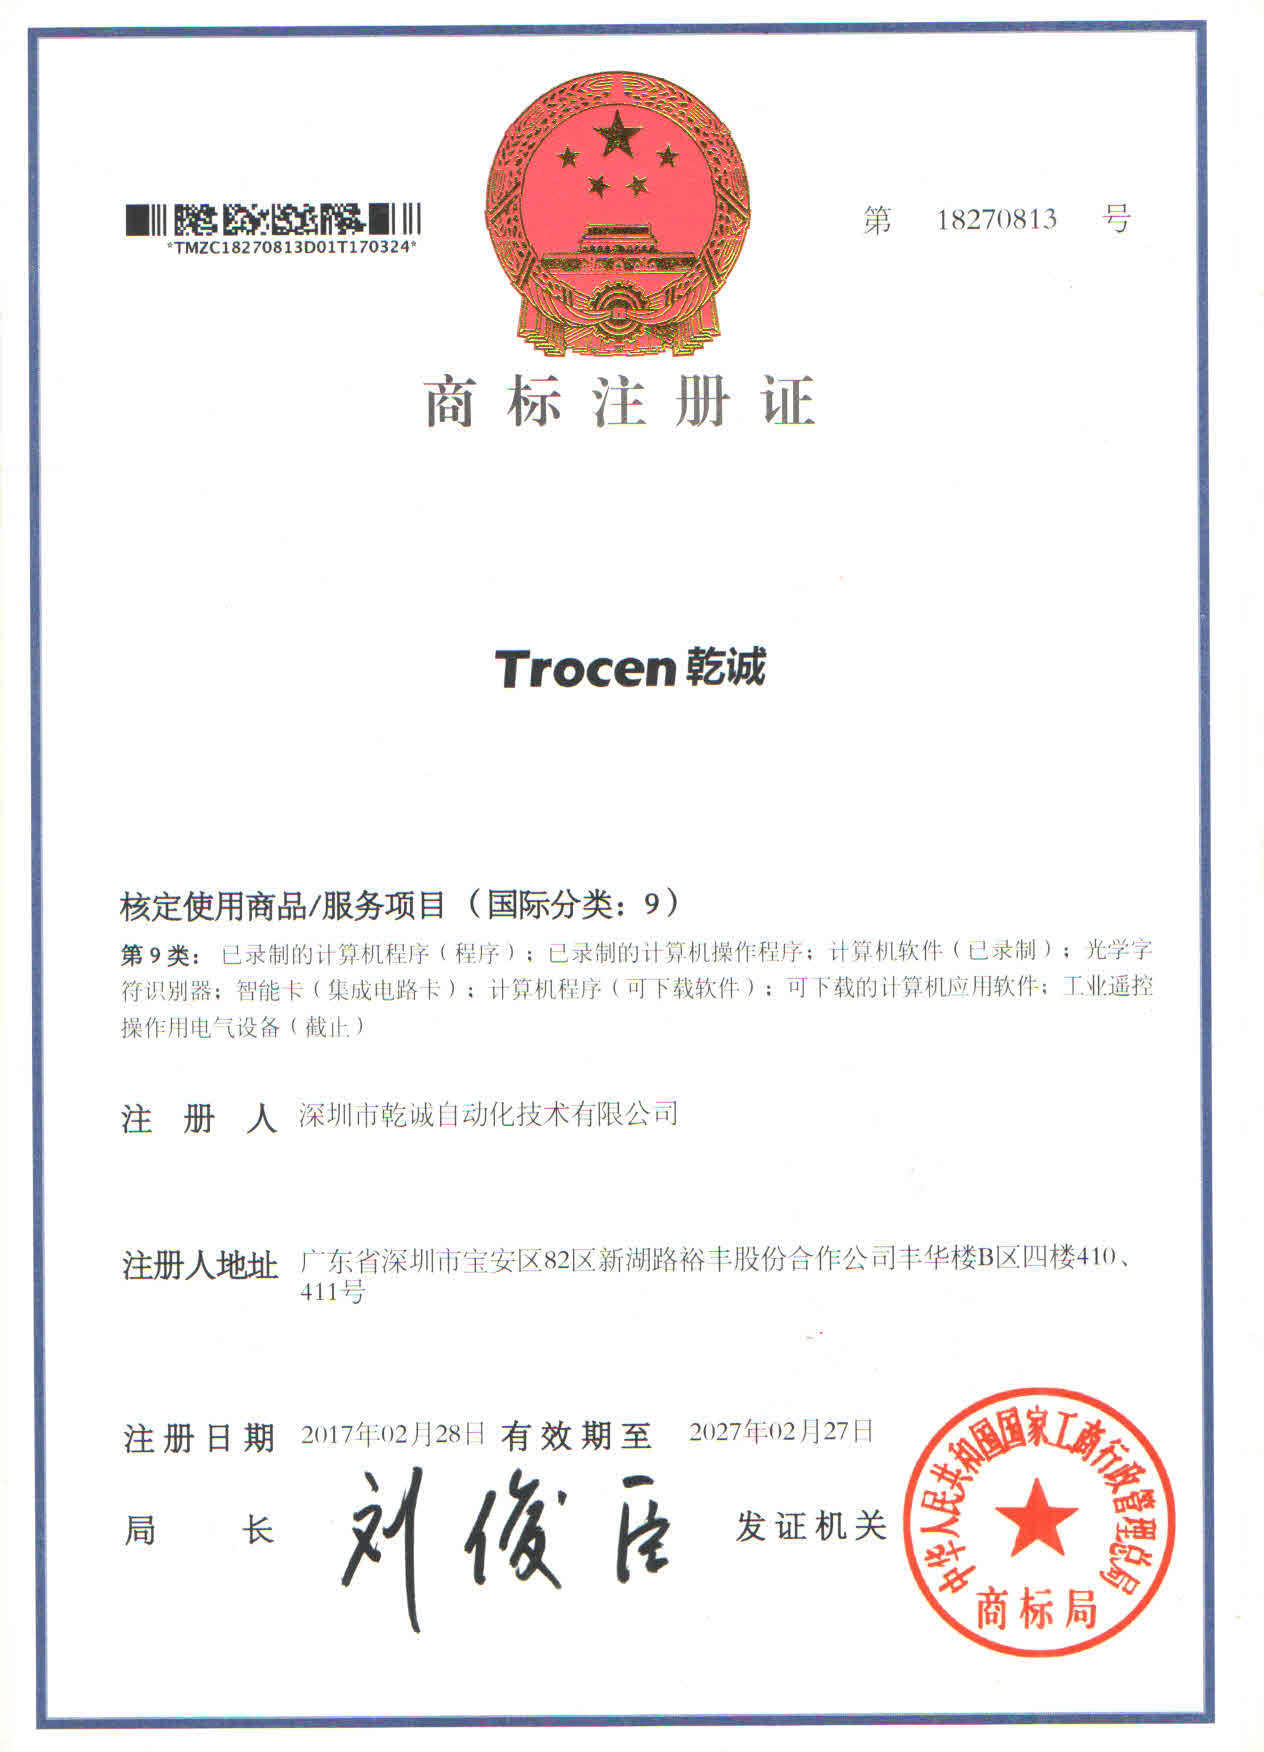  热烈庆祝我司成功获得“Trocen乾诚”国家商标注册证书